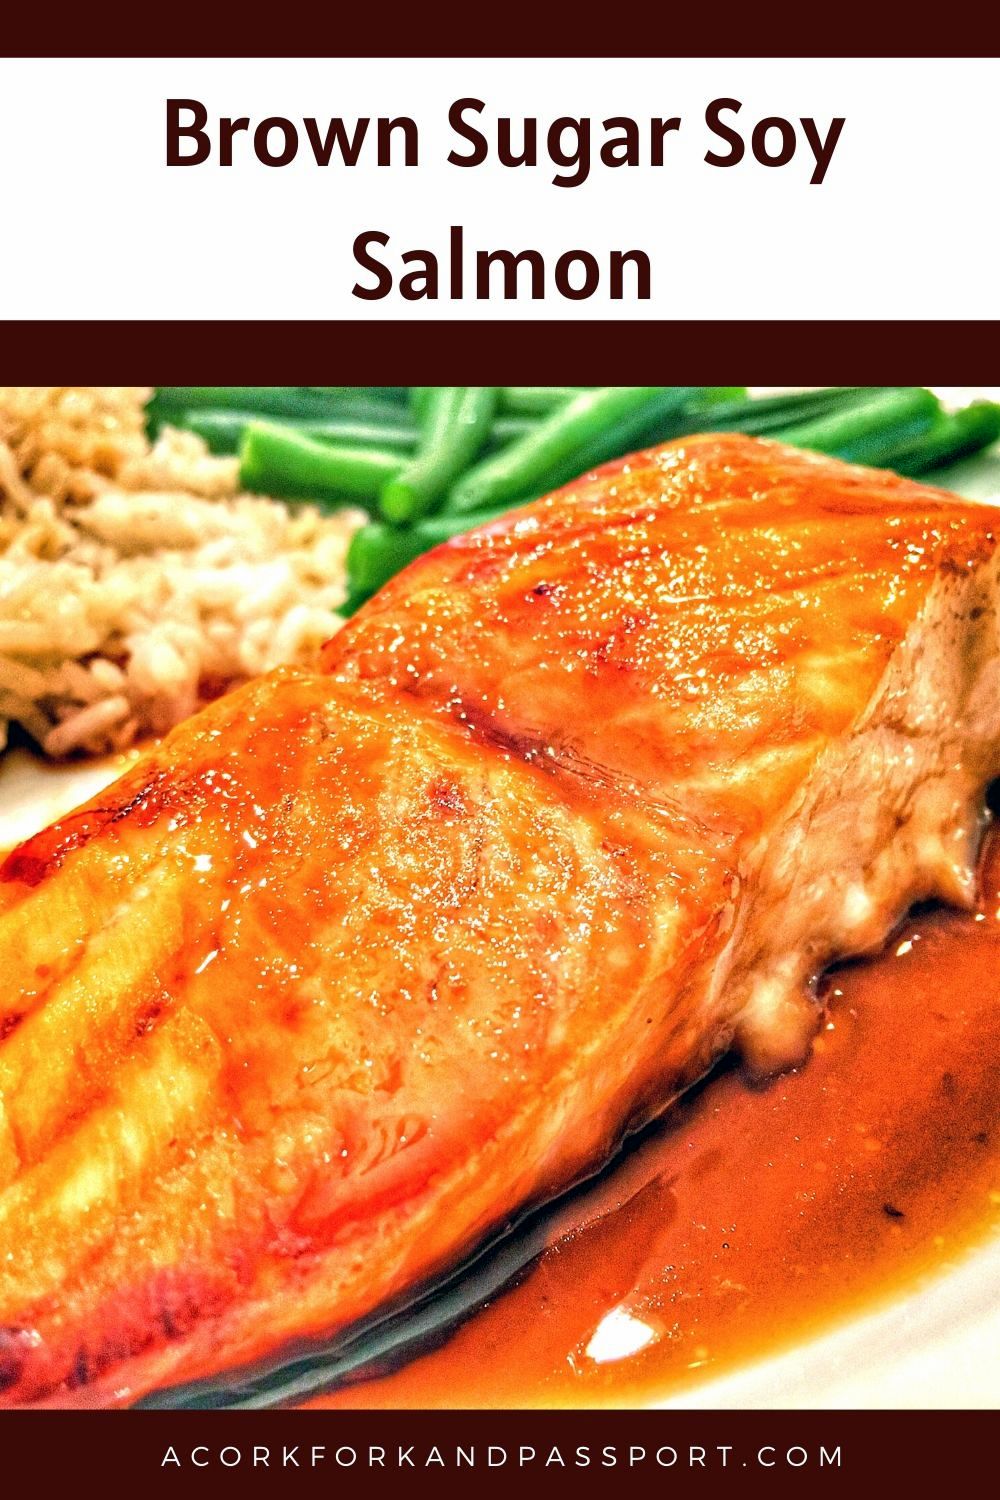 Brown Sugar Soy Salmon | A Cork, Fork, & Passport